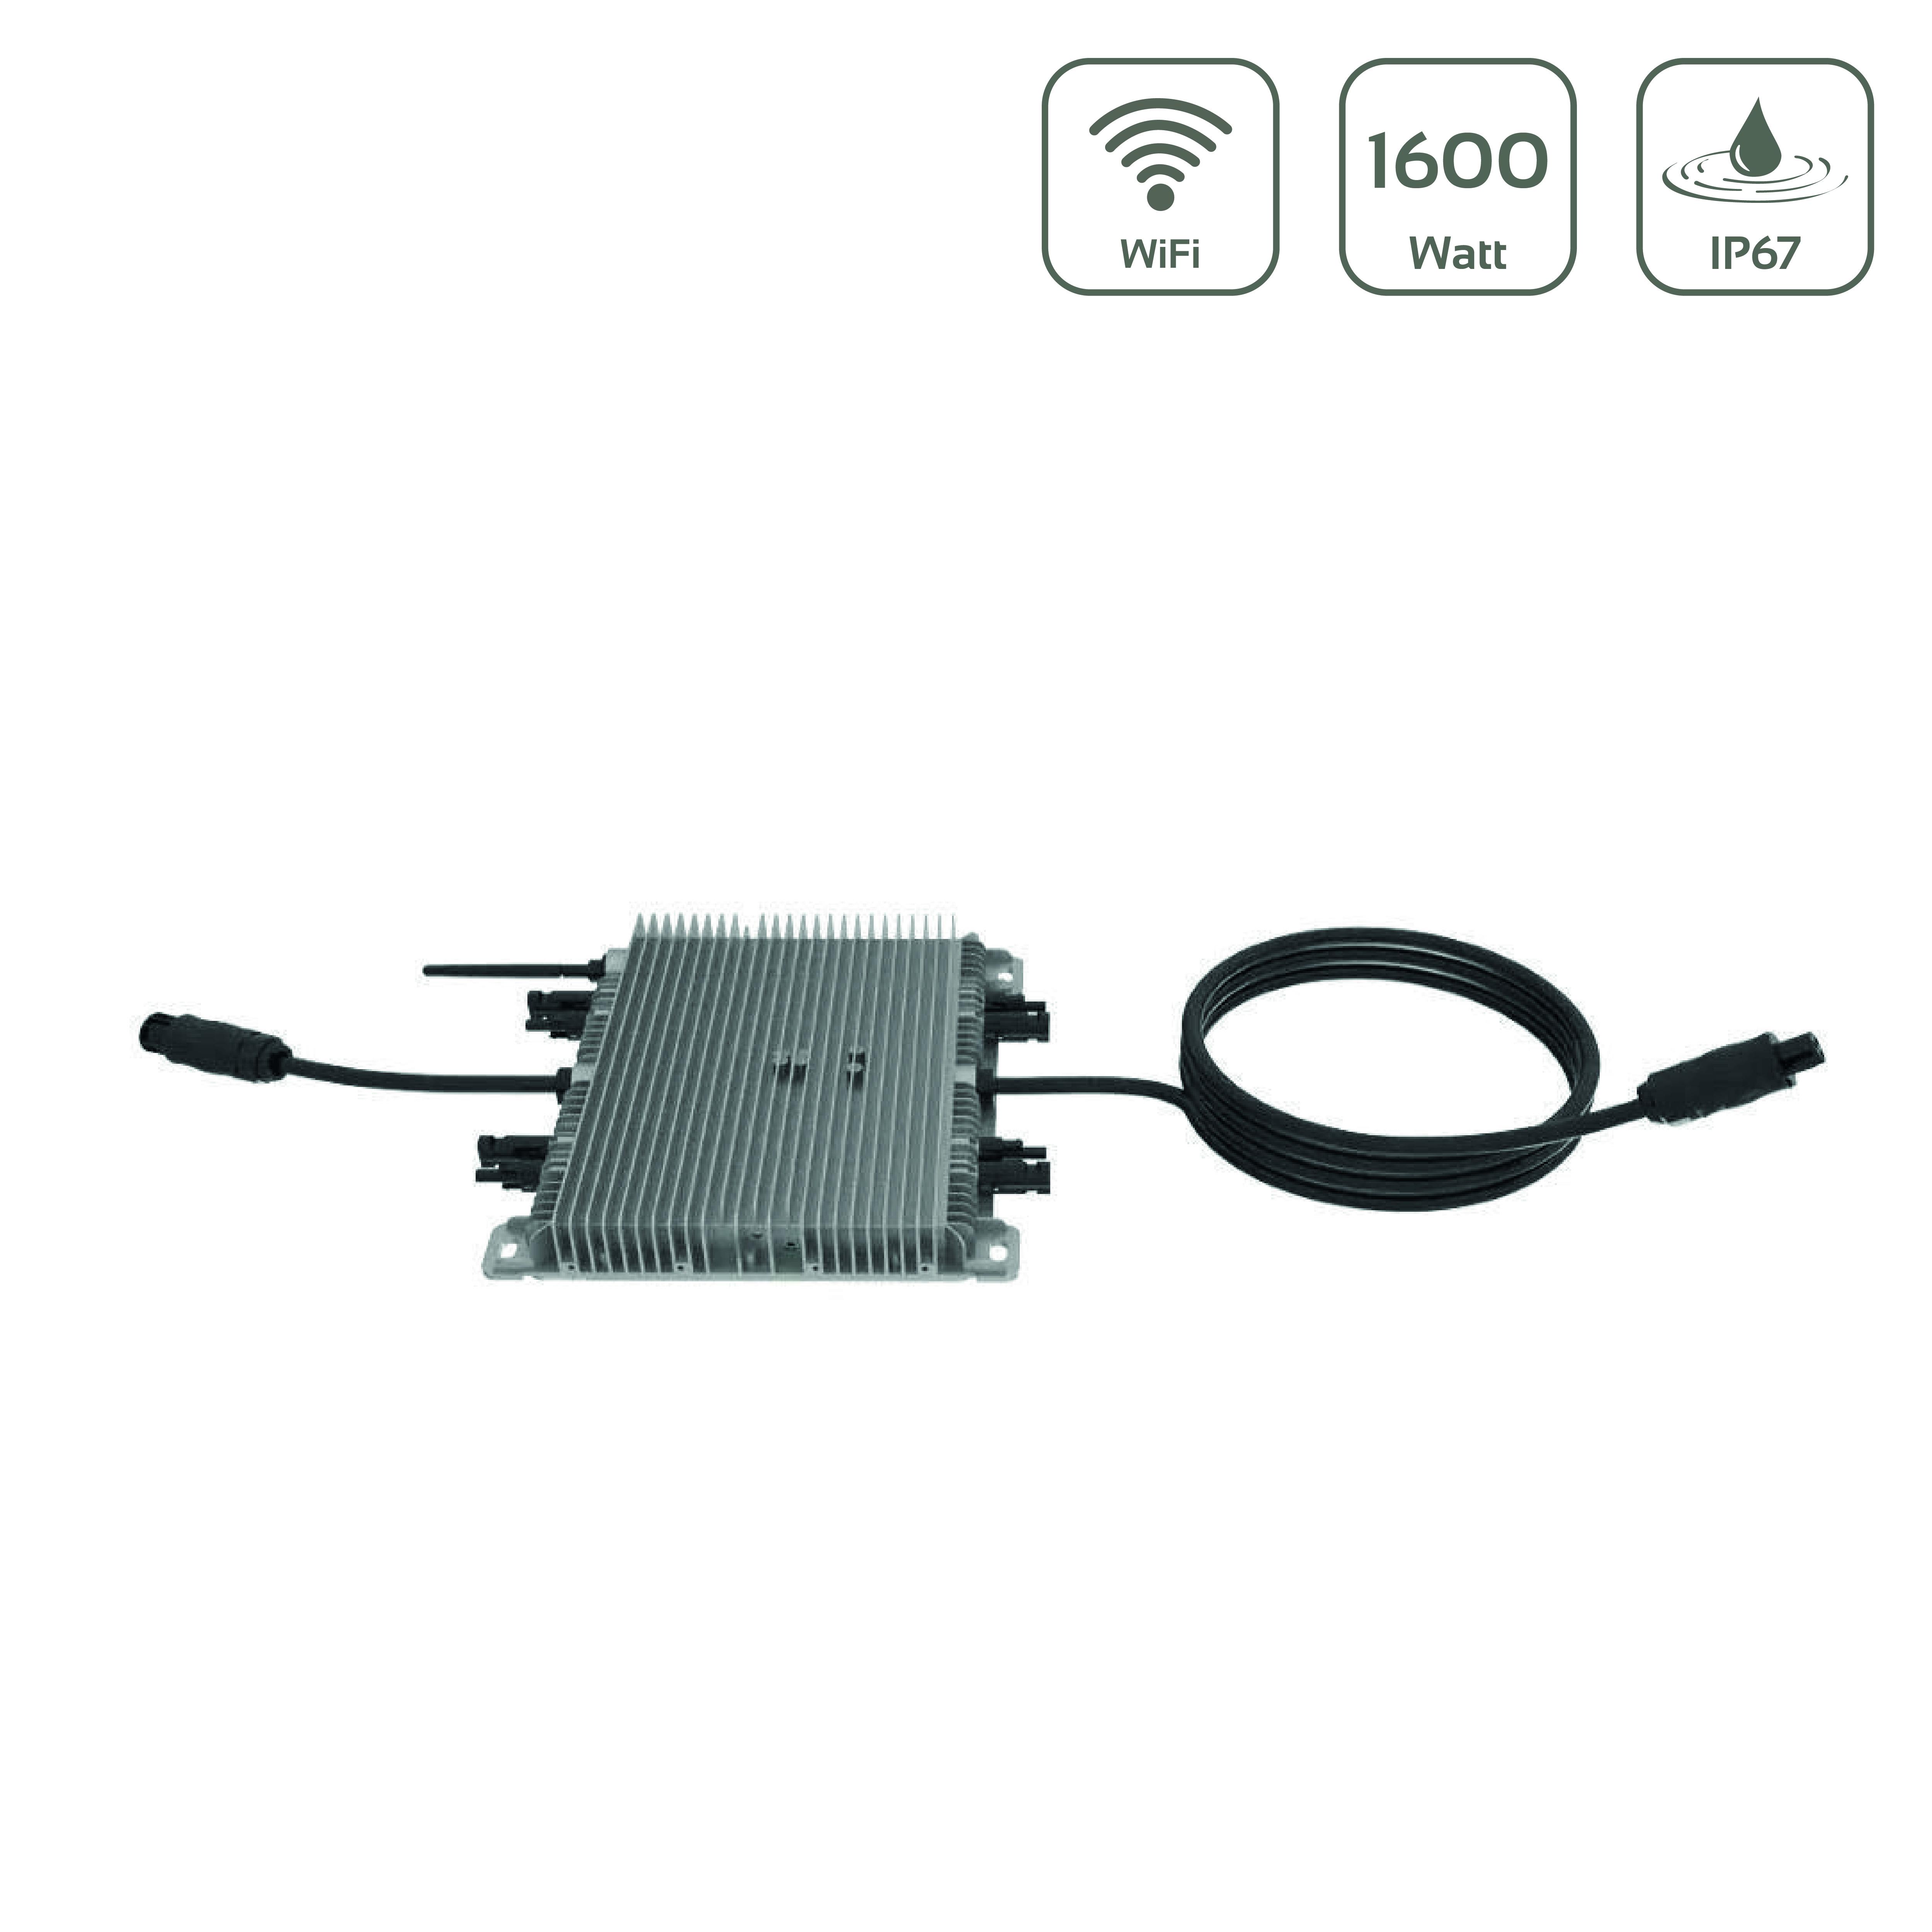 Deye SUN1600G3-EU-230 Mikroinverter Wechselrichter 1600W mit WiFi - MwSt: 0% NUR für Privatkunden